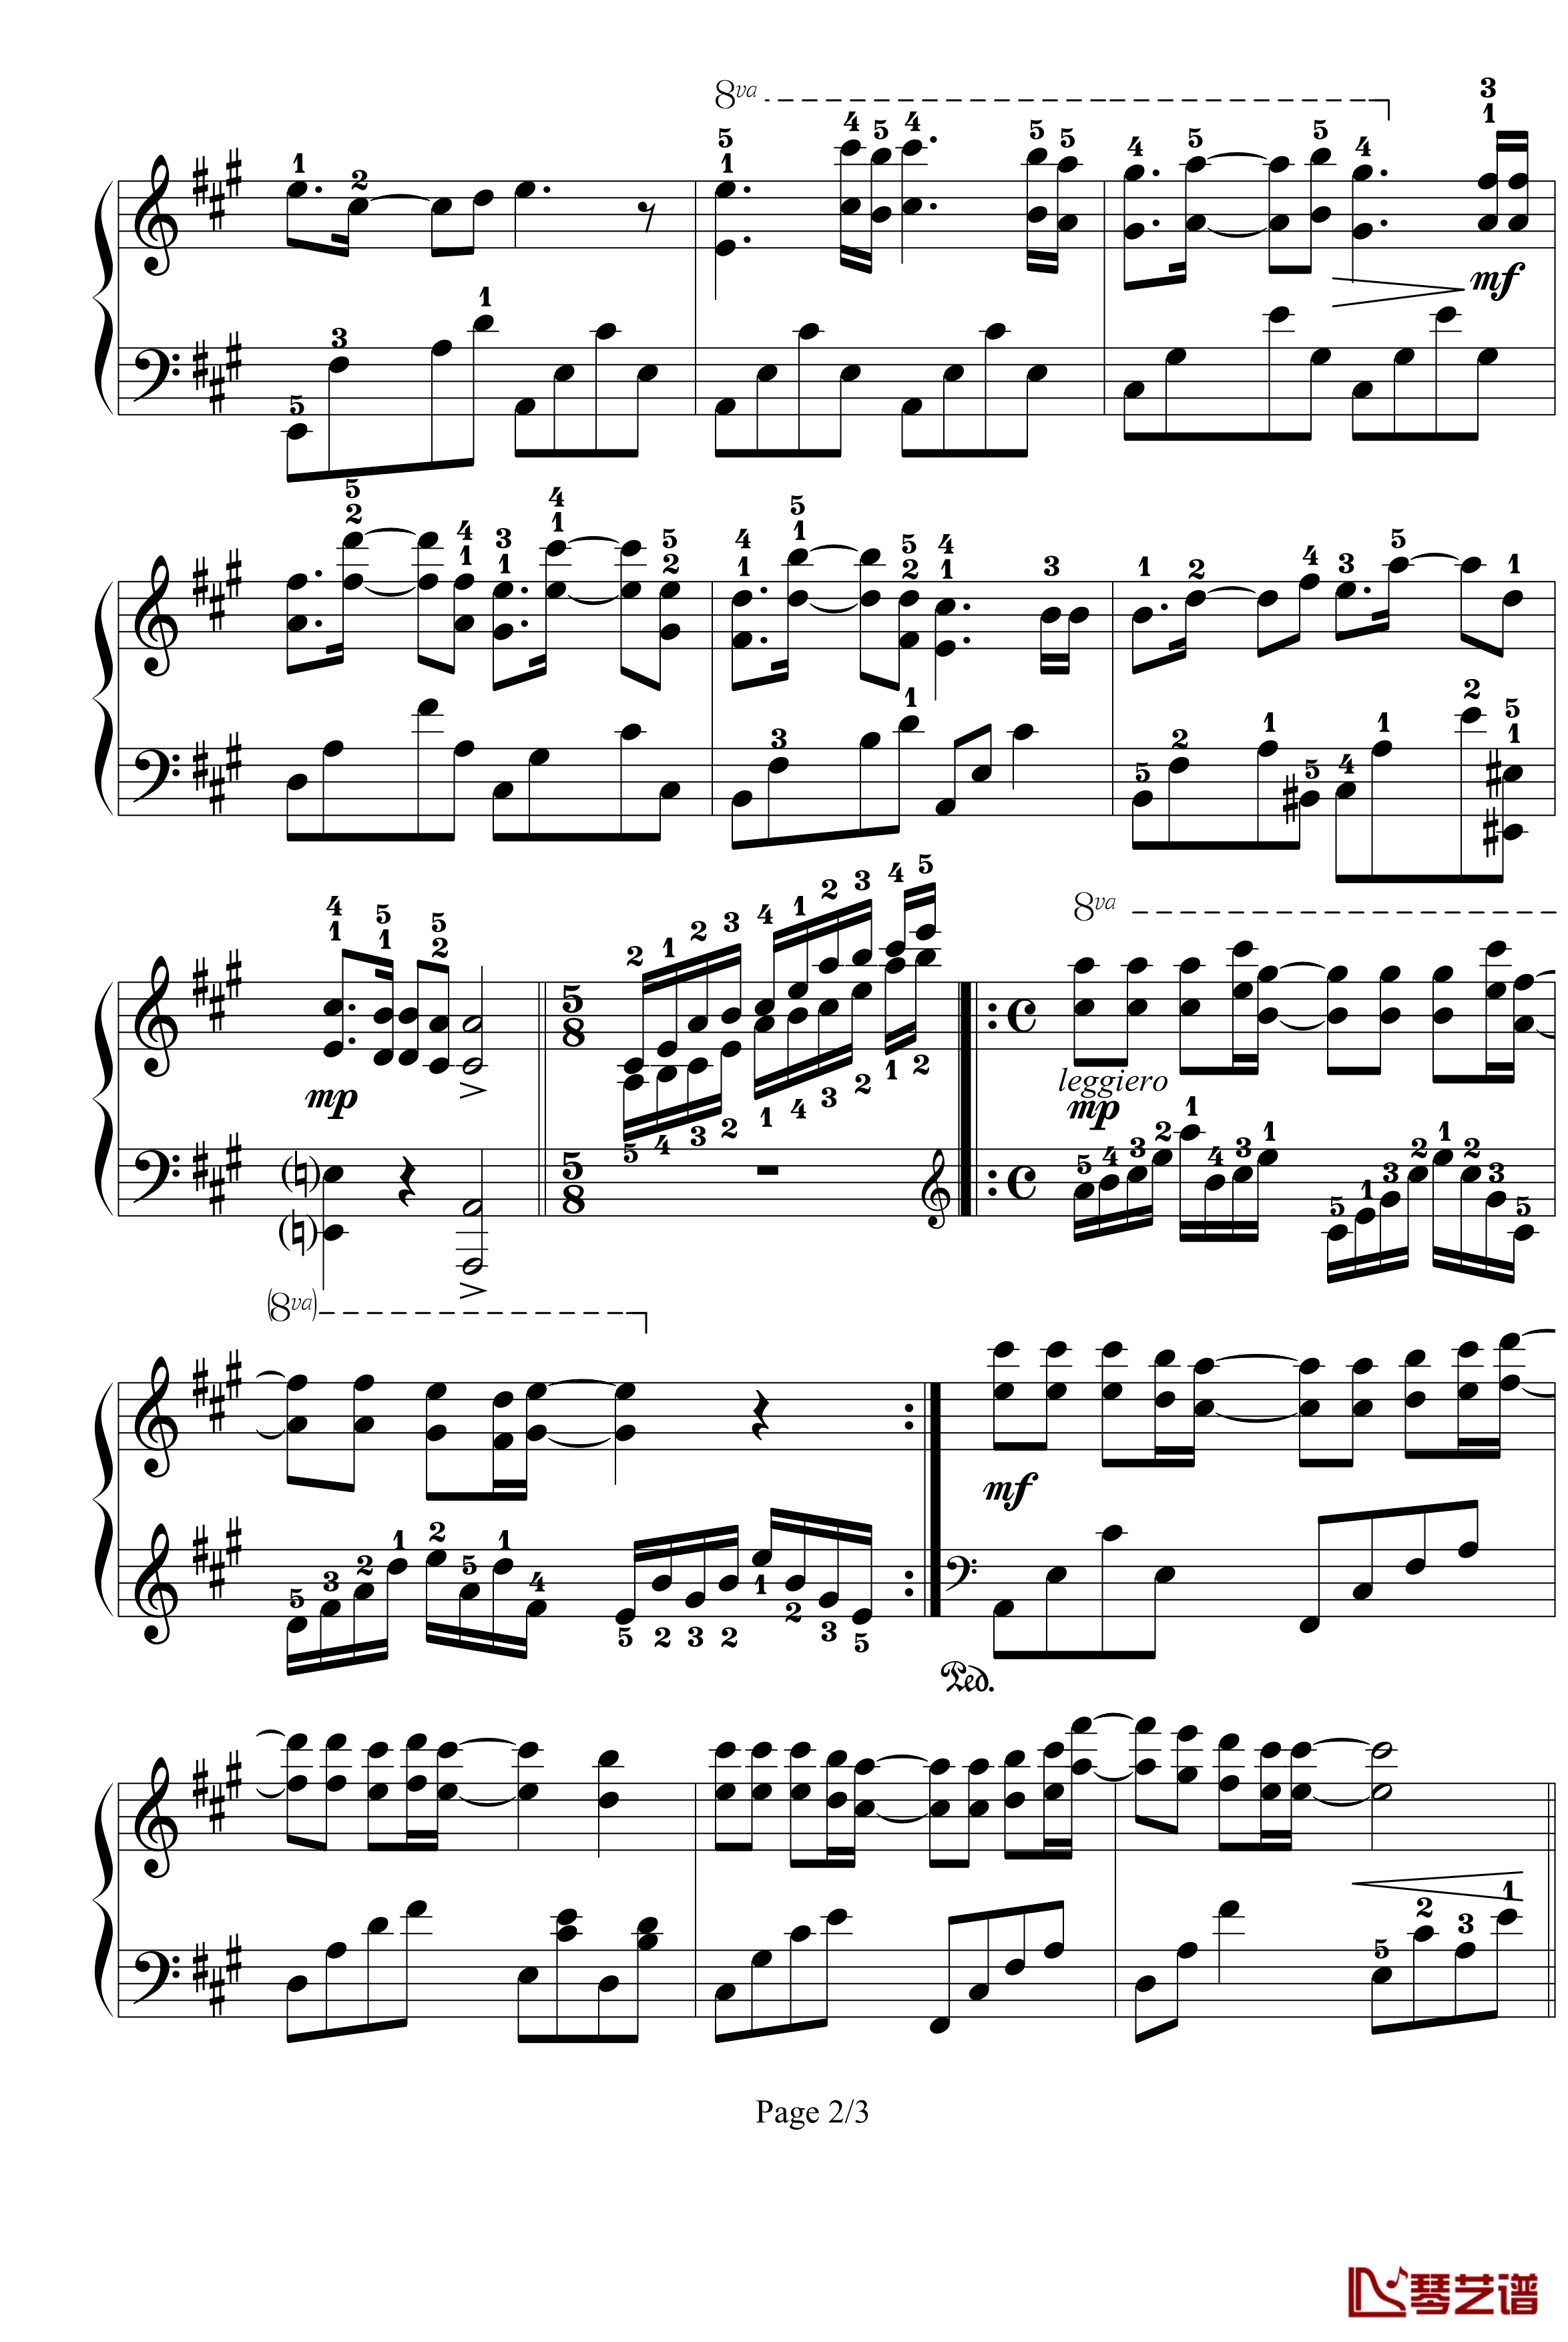 星星小夜曲钢琴谱-带指法-已删除-塞内维尔2